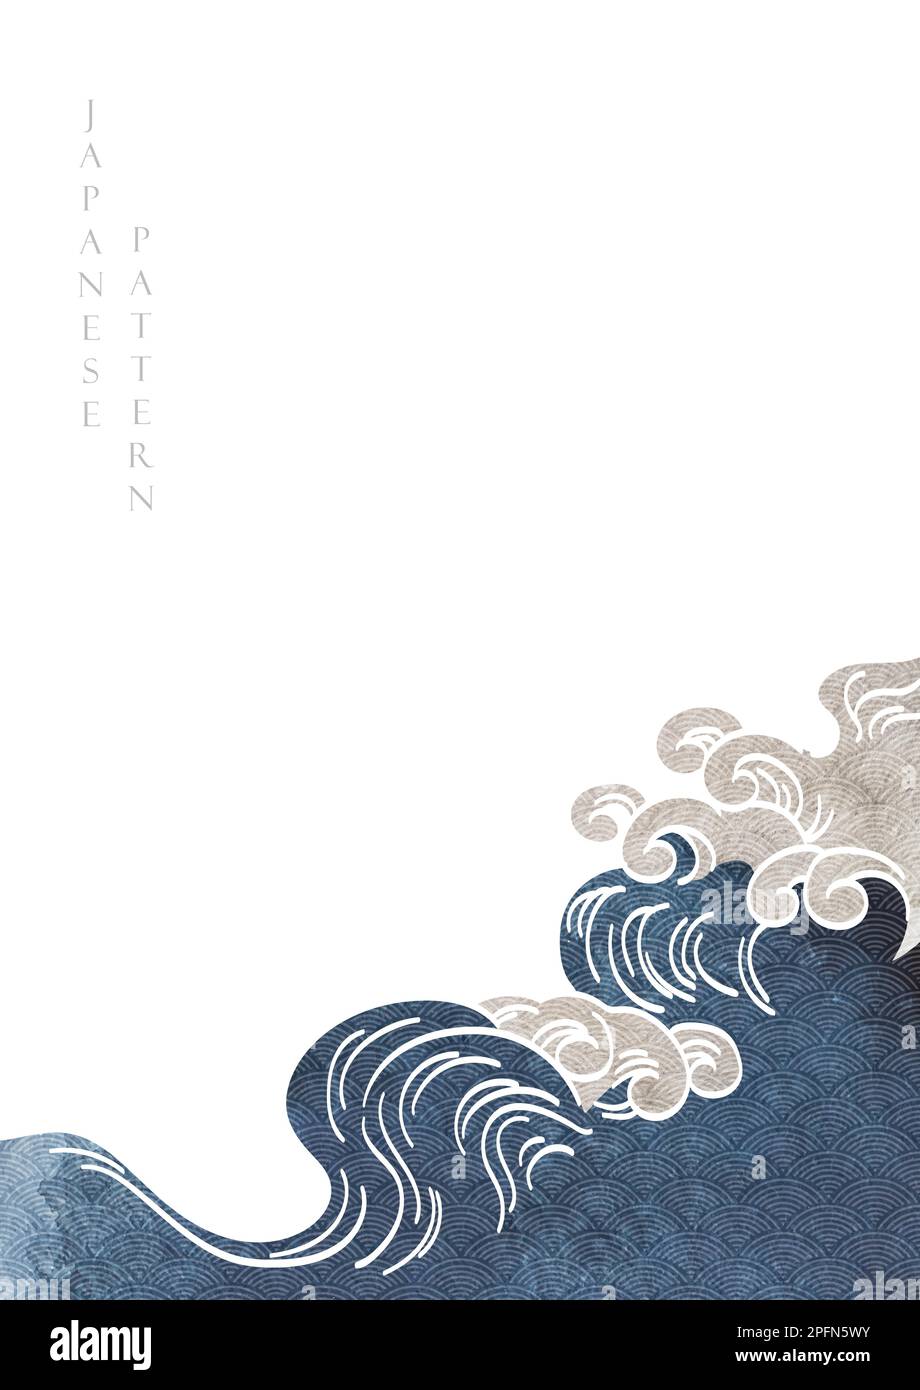 Zeichnen Sie mit der Hand einen Wellenhintergrund mit einem japanischen Wellenmustervektor. Aquarelle Textur mit Wasseroberfläche im Vintage-Stil. Stock Vektor